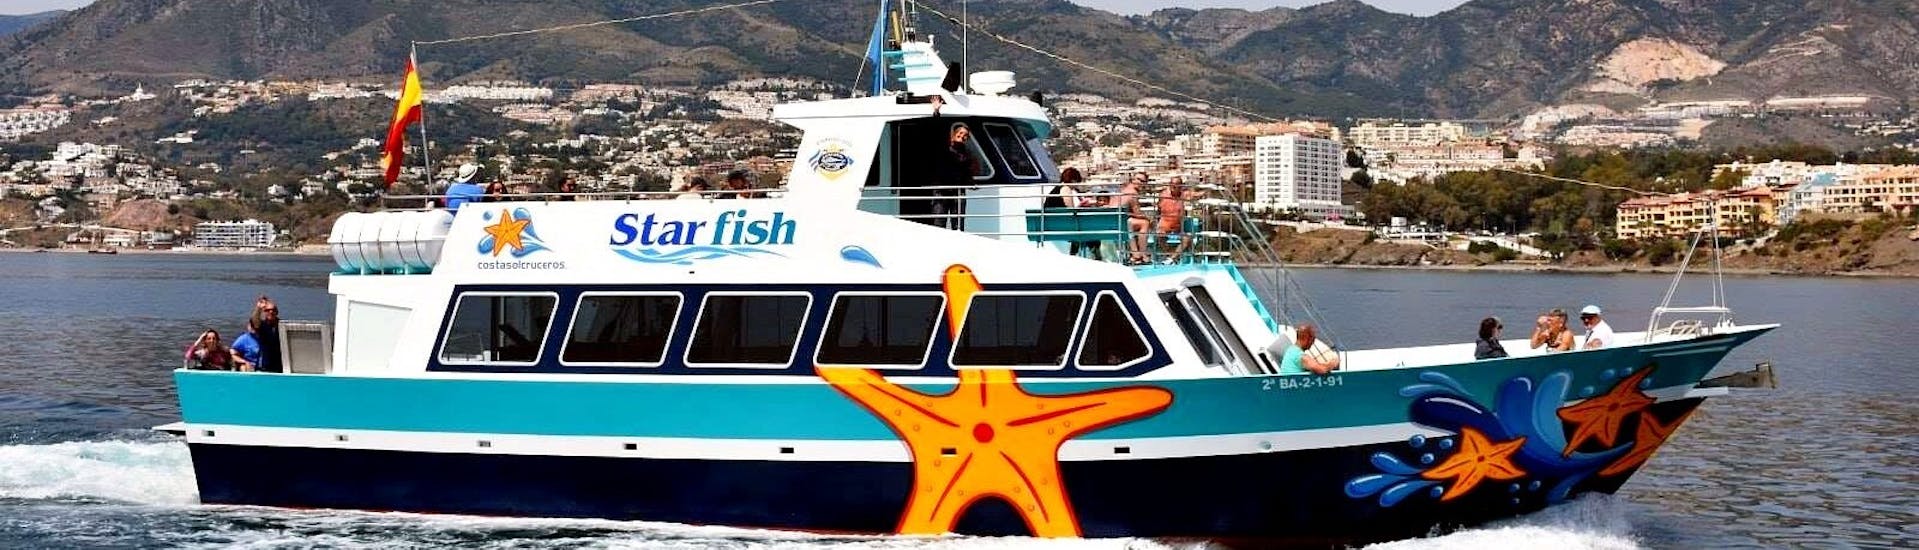 De Starfish Two veerboot cruisend op het prachtige blauwe water van de Middellandse Zee tijdens een boottocht tussen Benalmádena en Fuengirola met Costasol Cruceros.